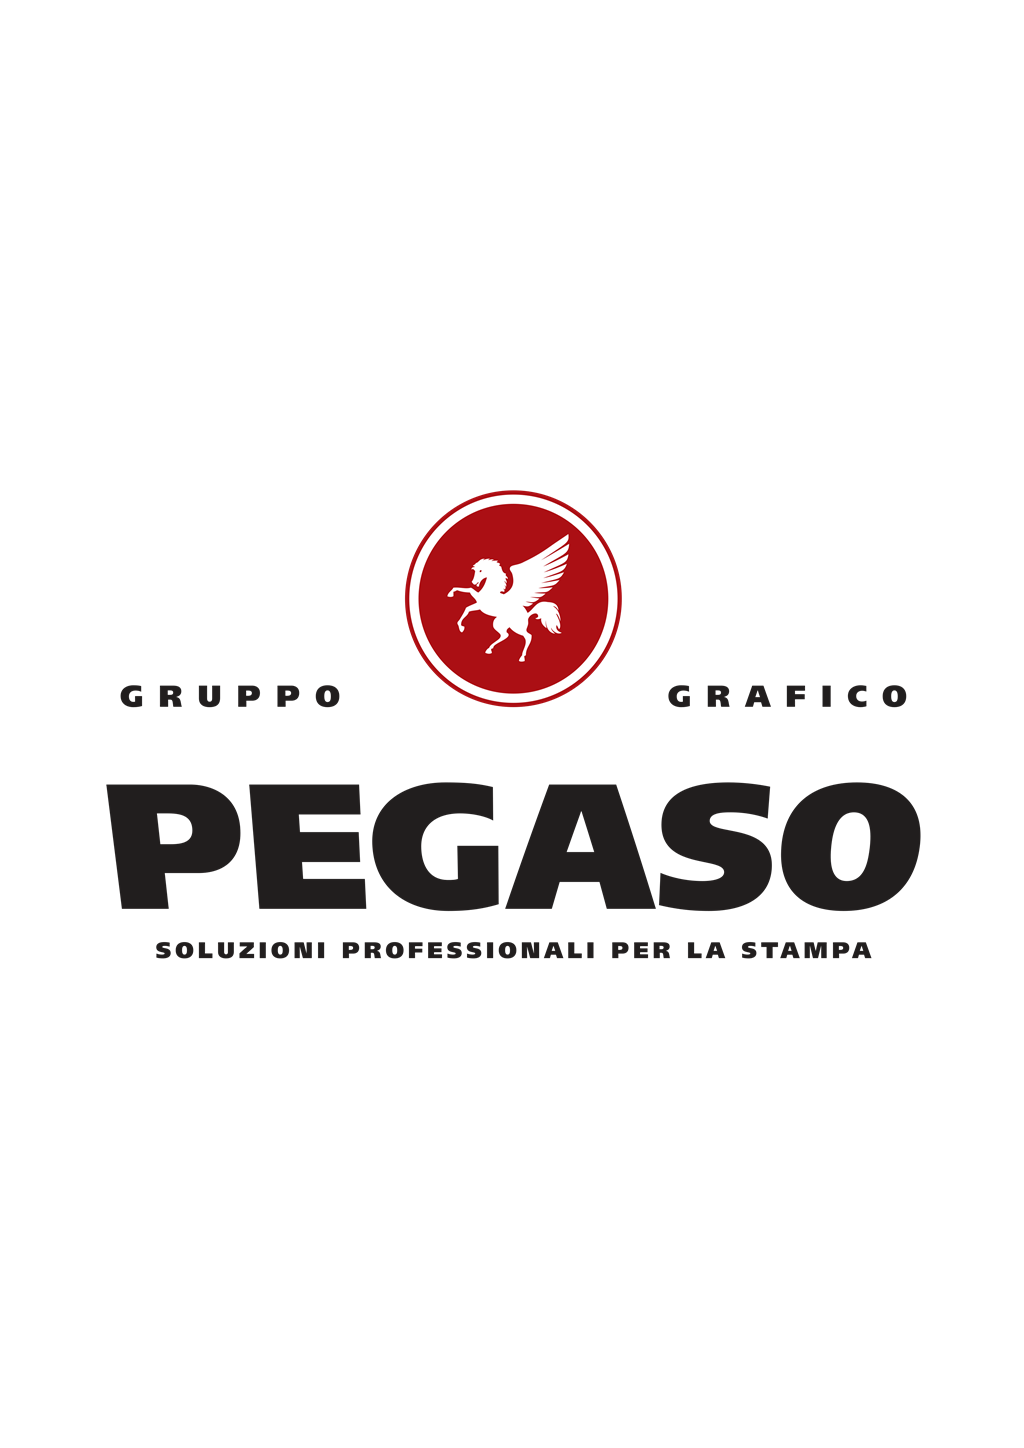 Pegaso logotype, transparent .png, medium, large